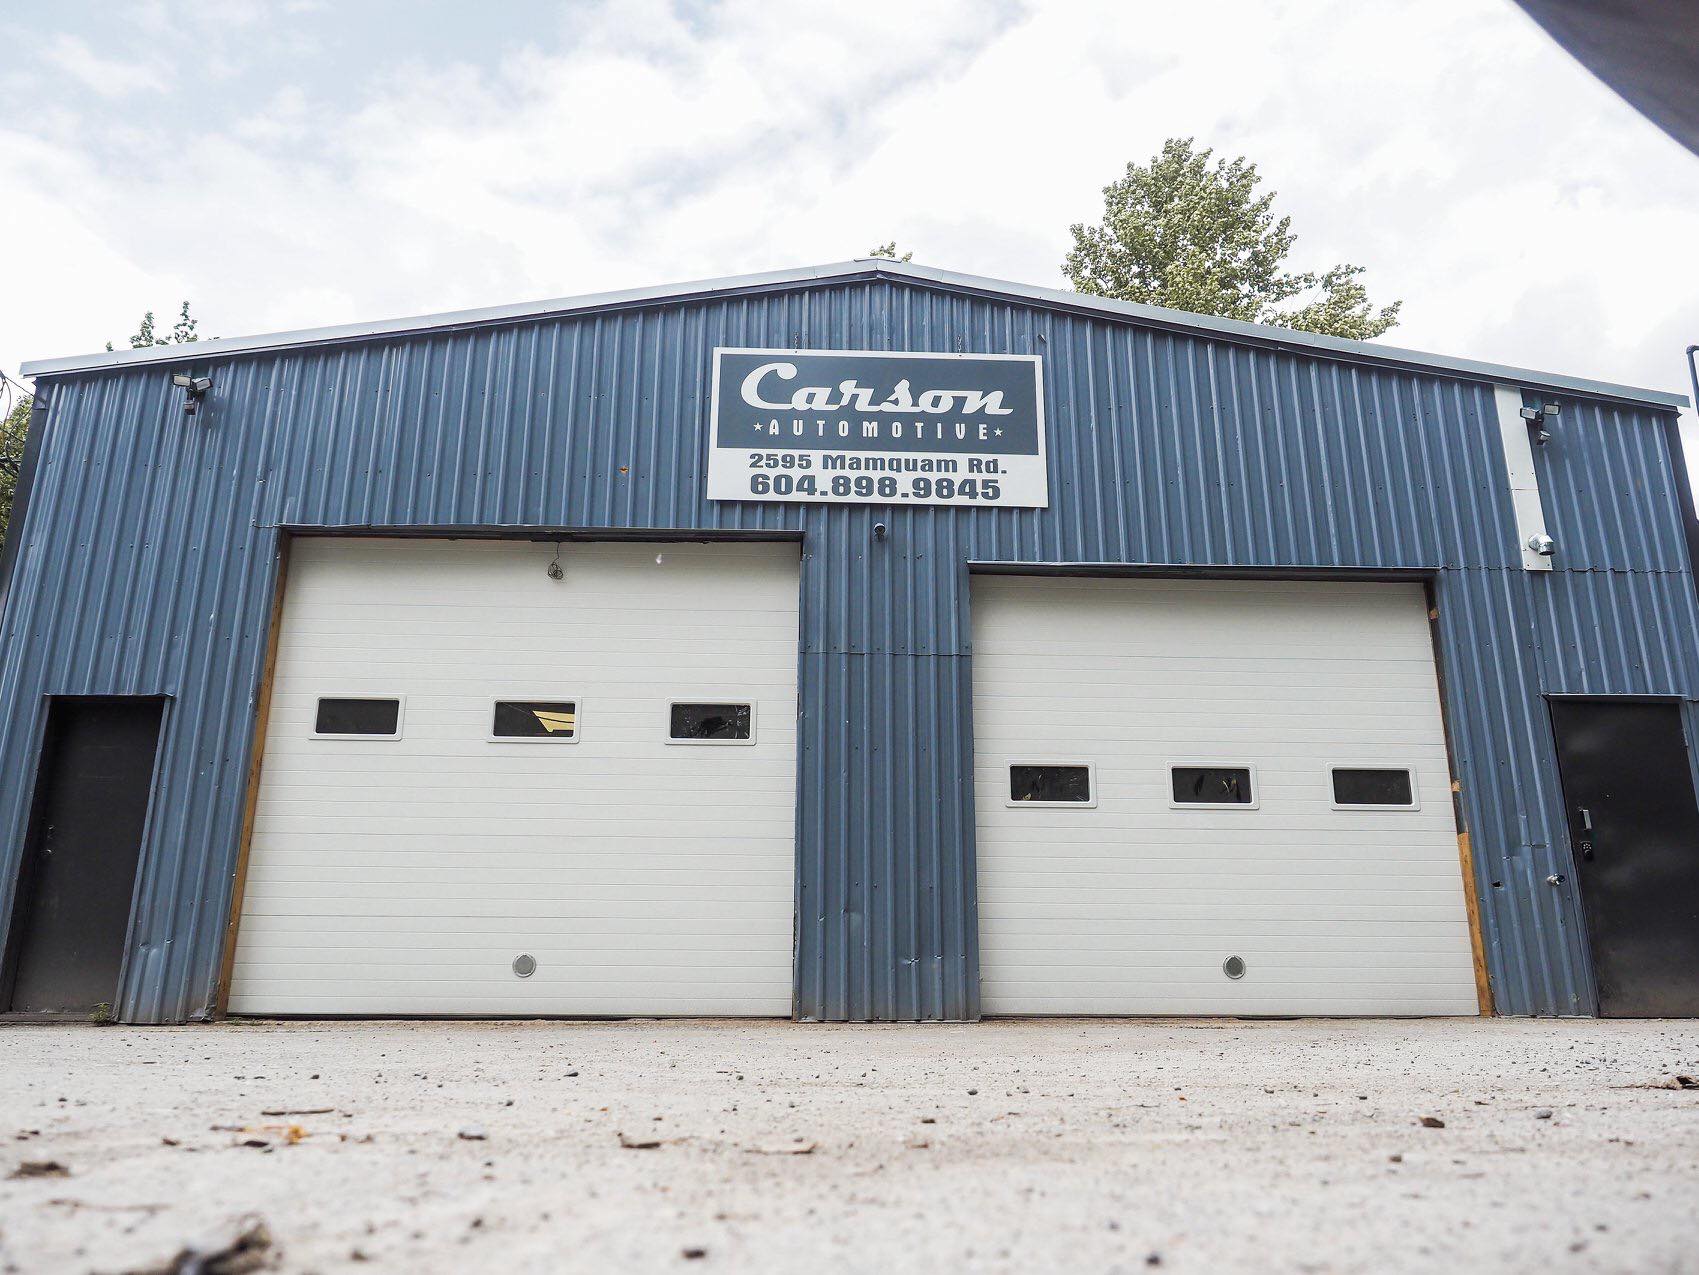 Carson's Automotive Service & Repair 2595 Mamquam Rd, Squamish British Columbia V8B 0H4